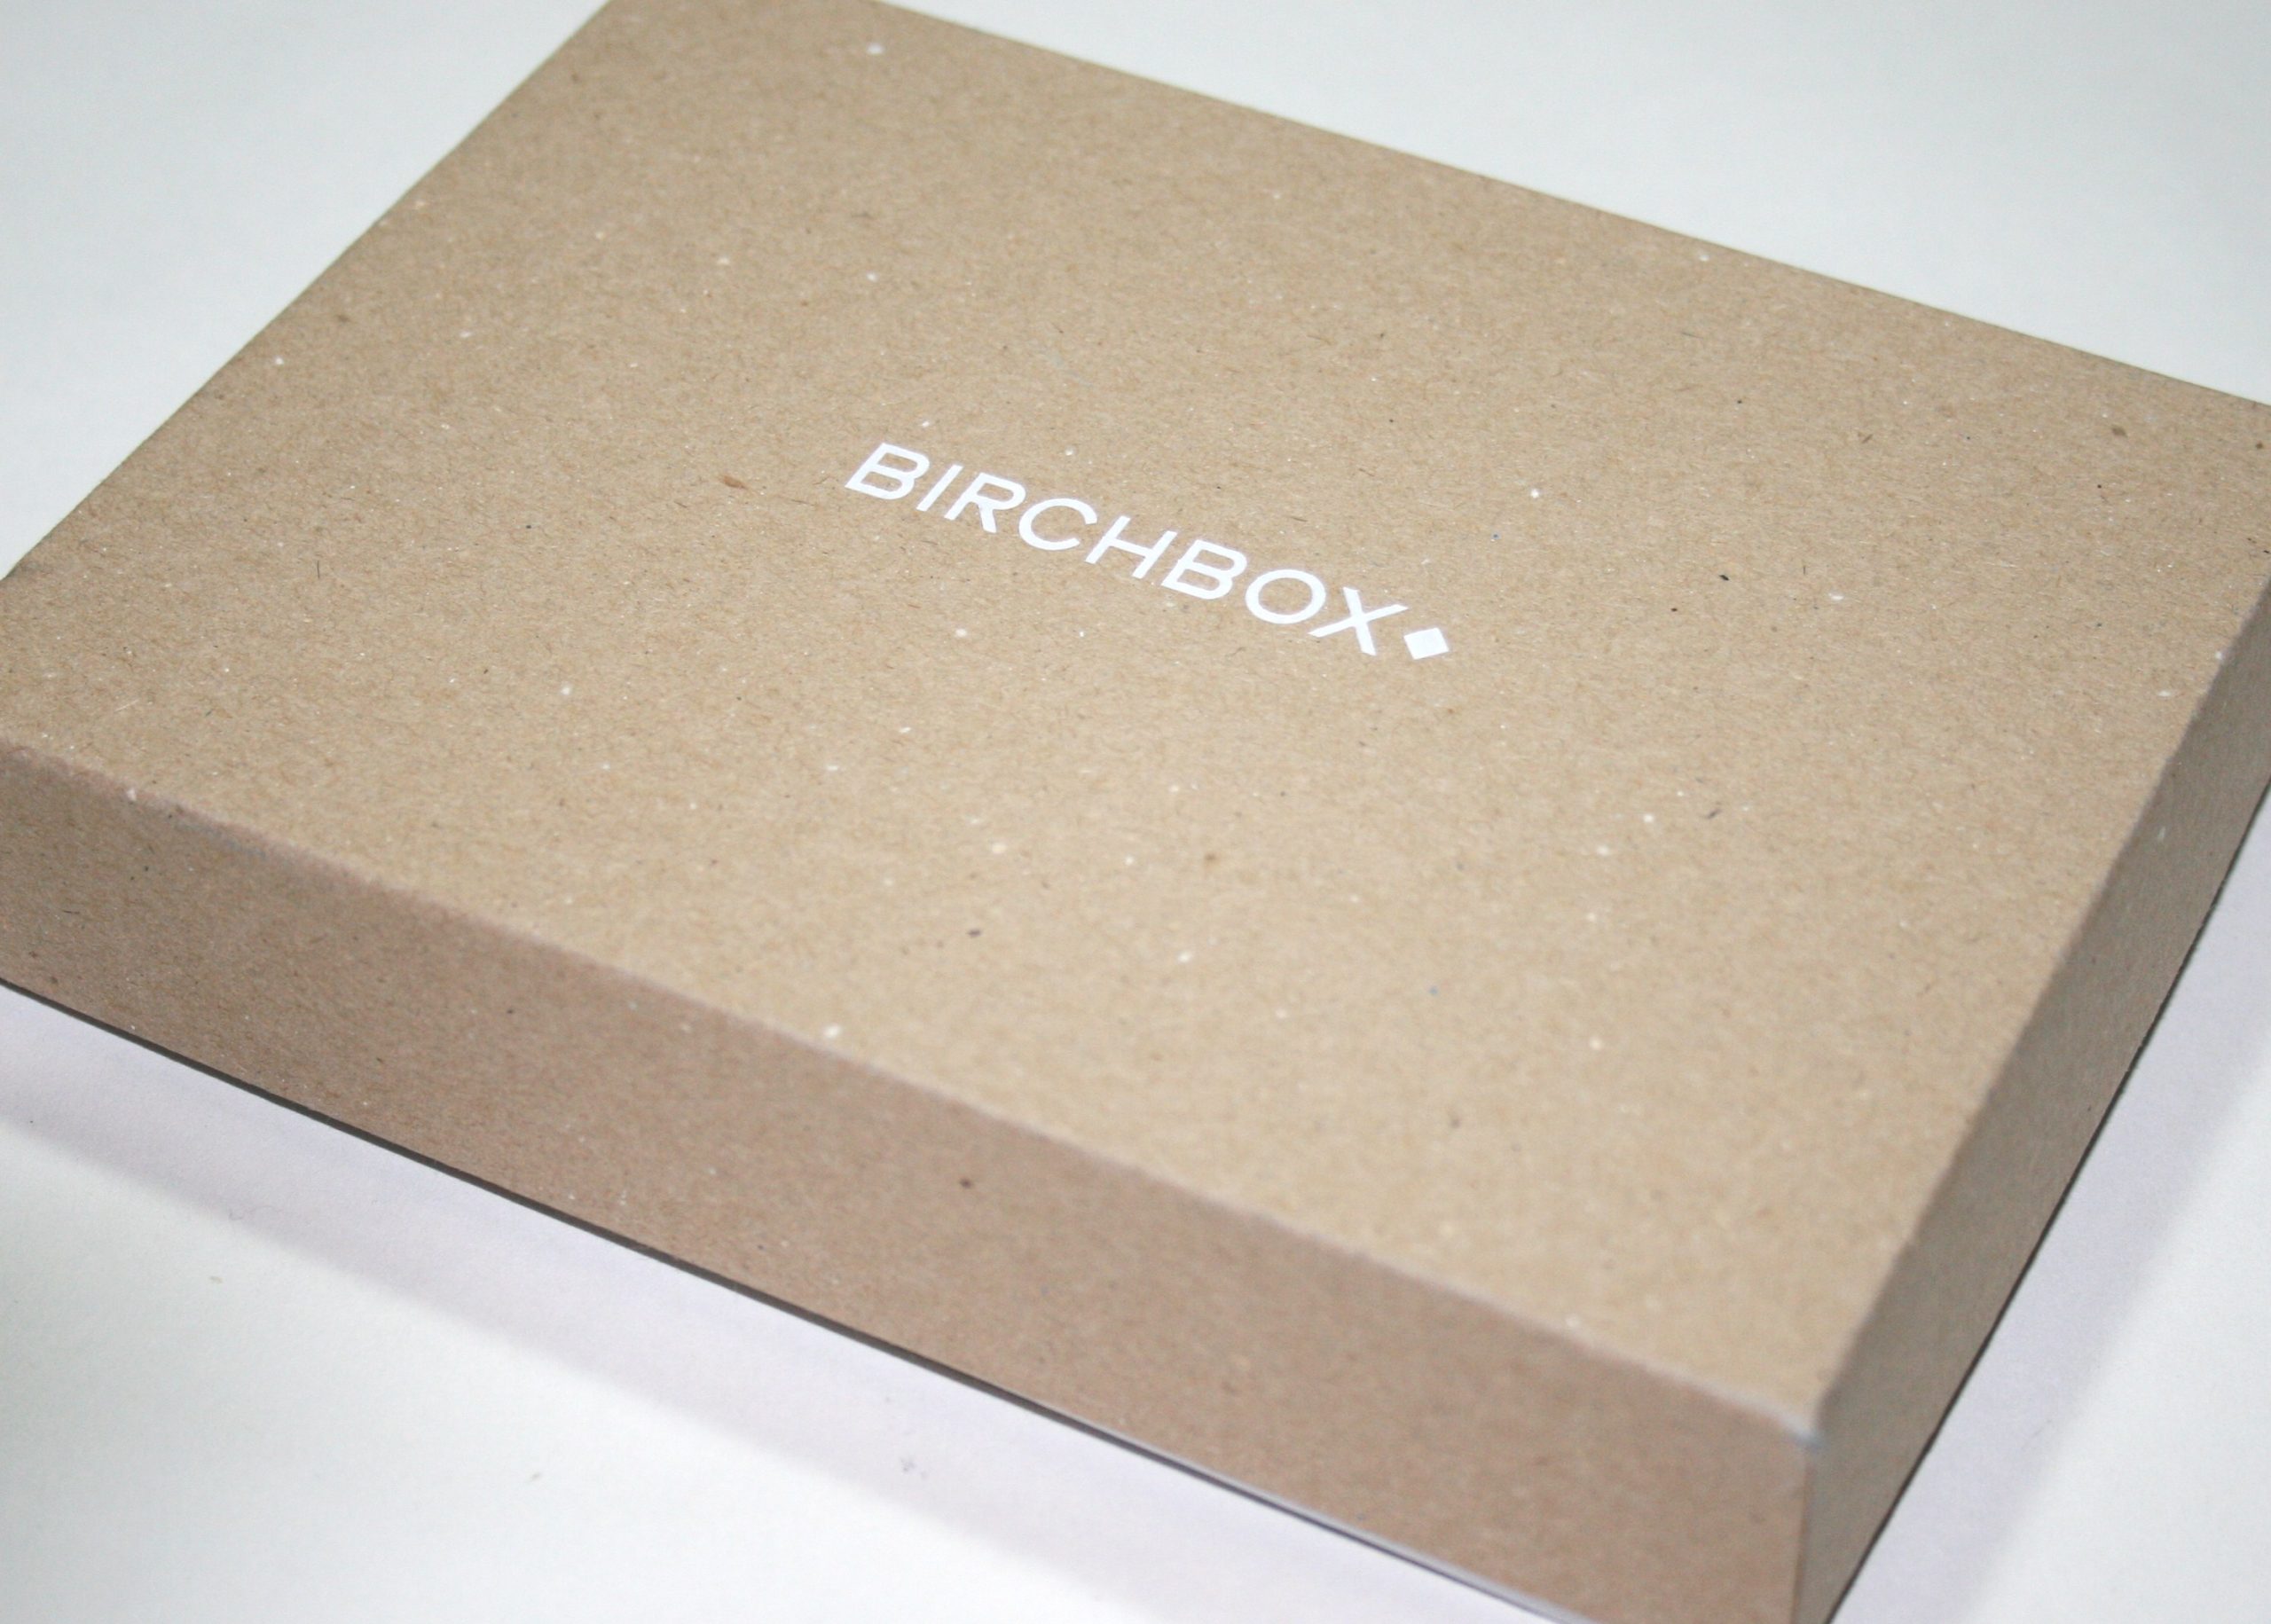 Birchbox February 2015 (Slimbox)